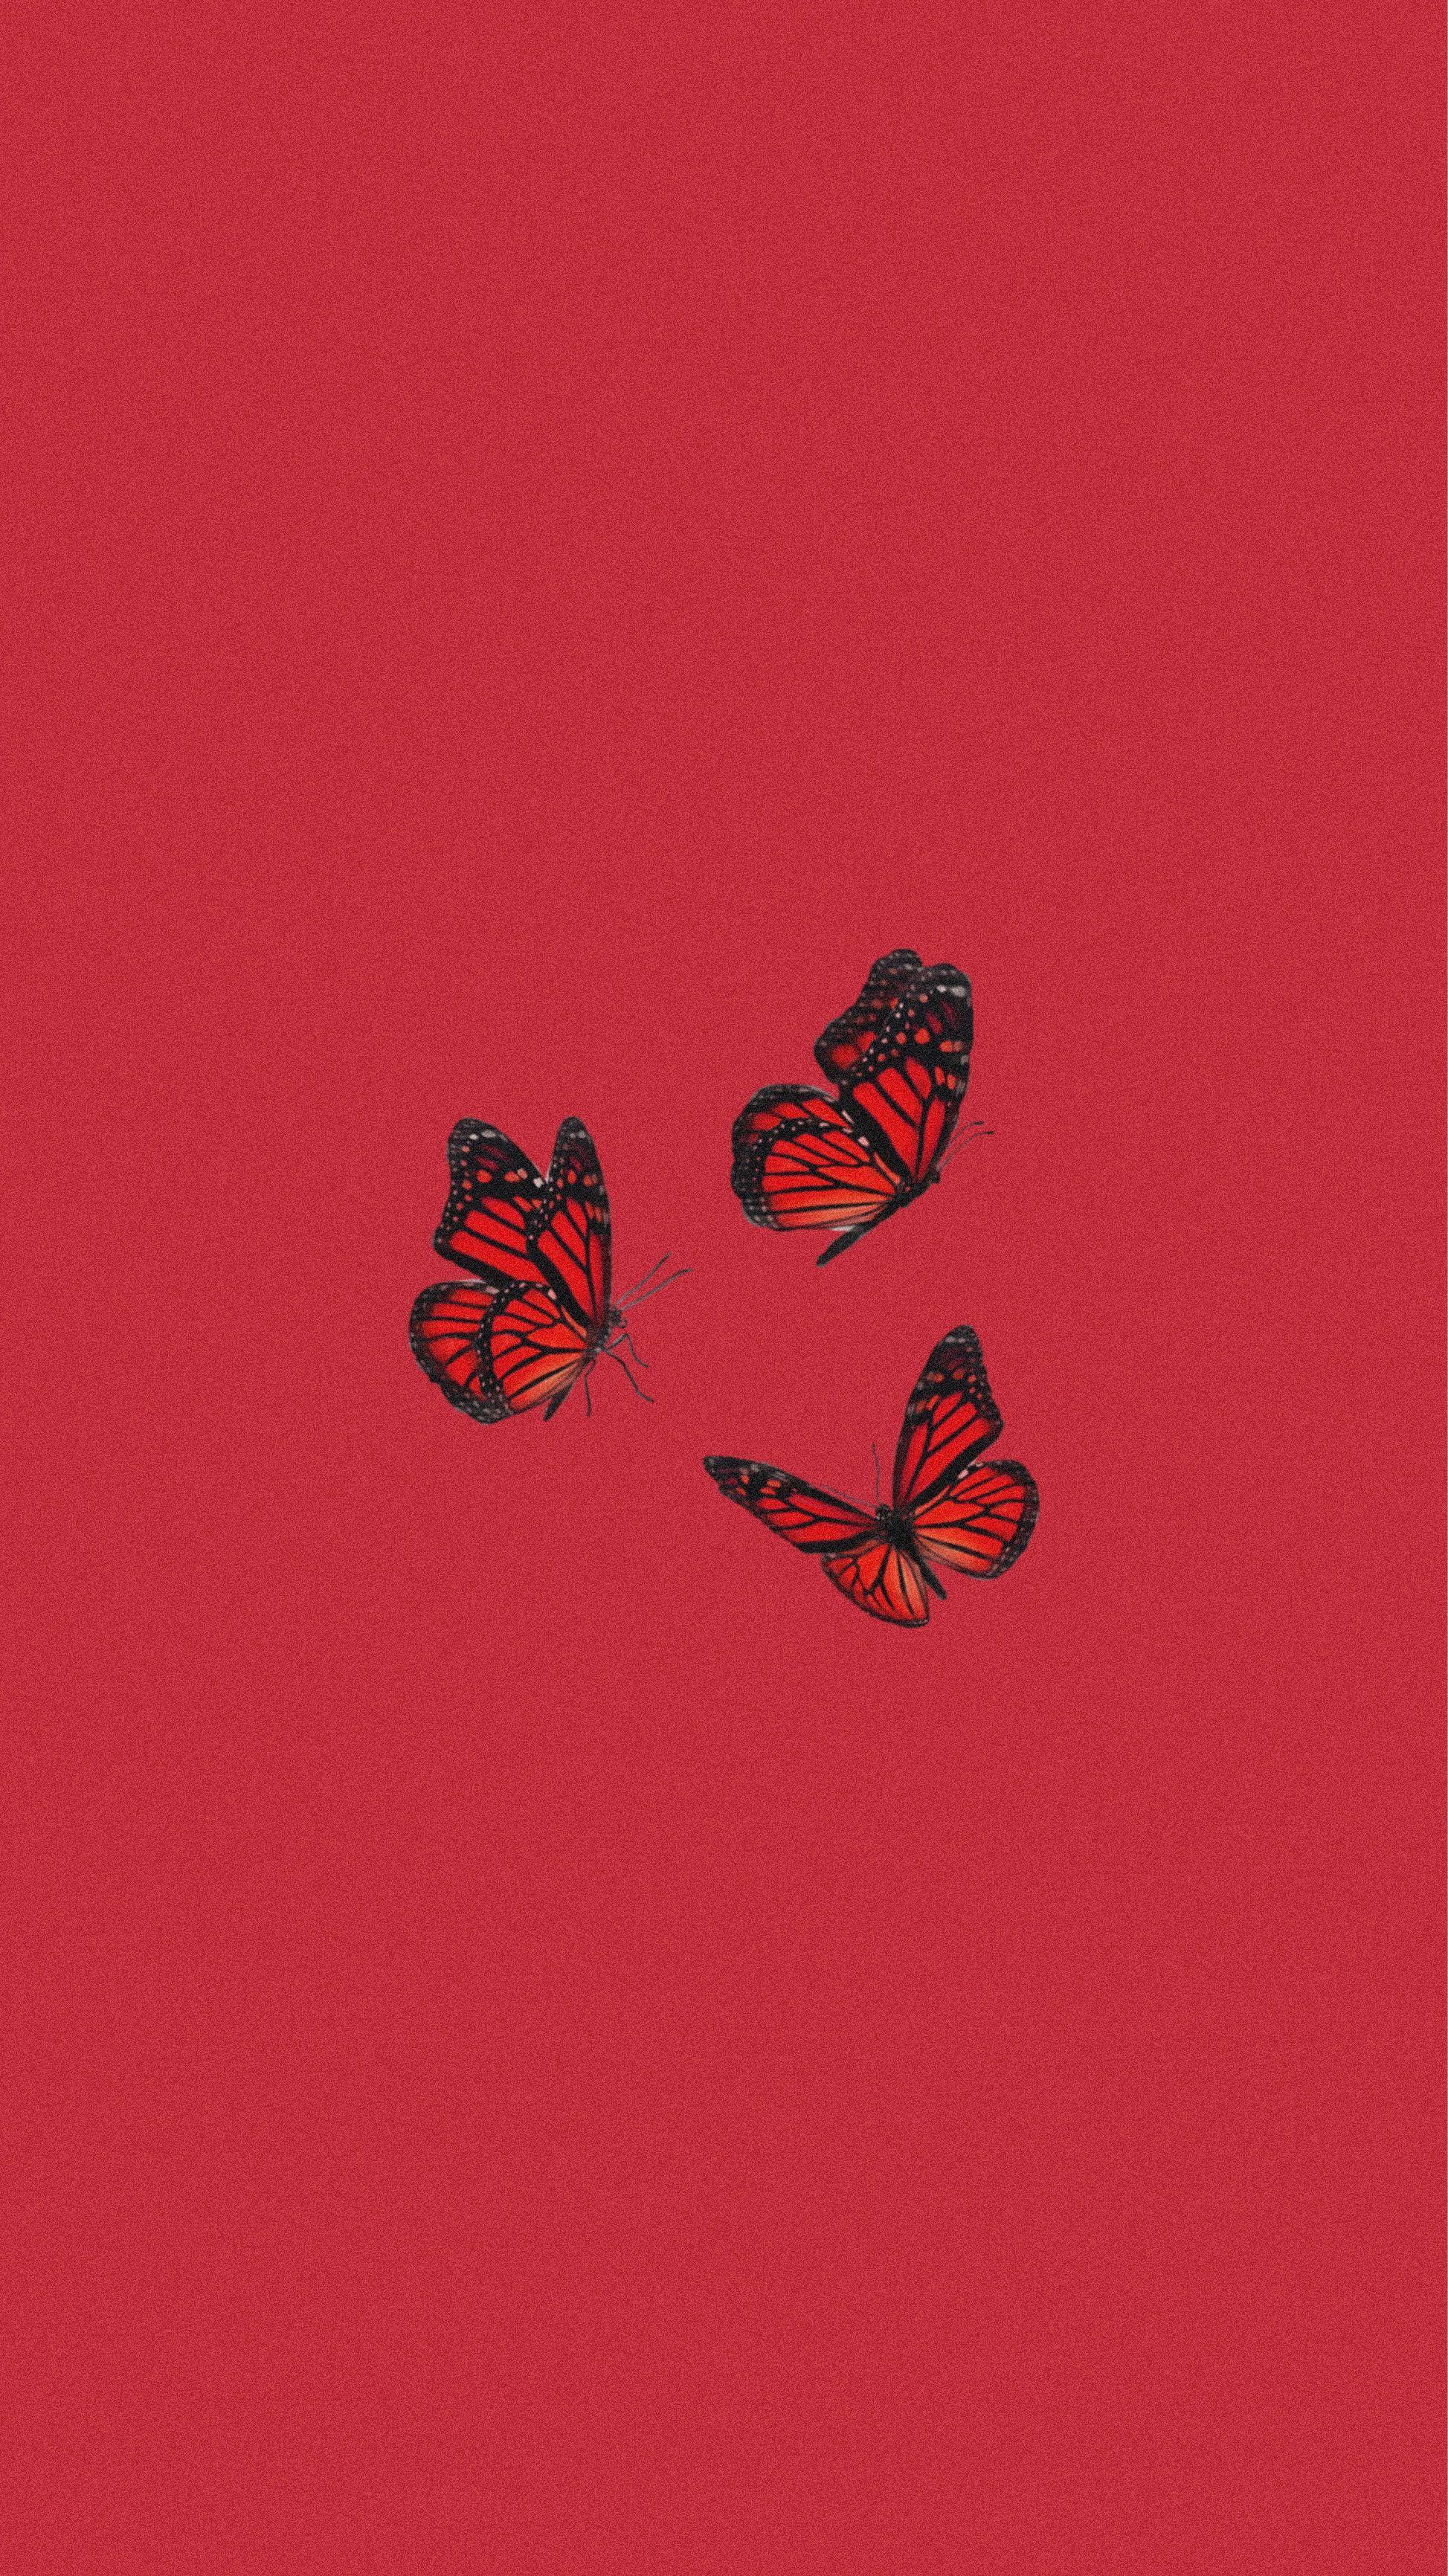 Hình nền bướm đỏ dễ thương: Hãy đắm mình vào thế giới của những bướm đỏ dễ thương với những hình nền trang trí độc đáo này. Với những hình ảnh sắc nét và độ sáng tạo, các bạn sẽ không thể bỏ qua những hình nền độc đáo này. Hãy để sự nổi bật của những bông hoa đầy màu sắc và con bướm đỏ rực này làm nổi bật điểm nhấn cho thiết kế của bạn!